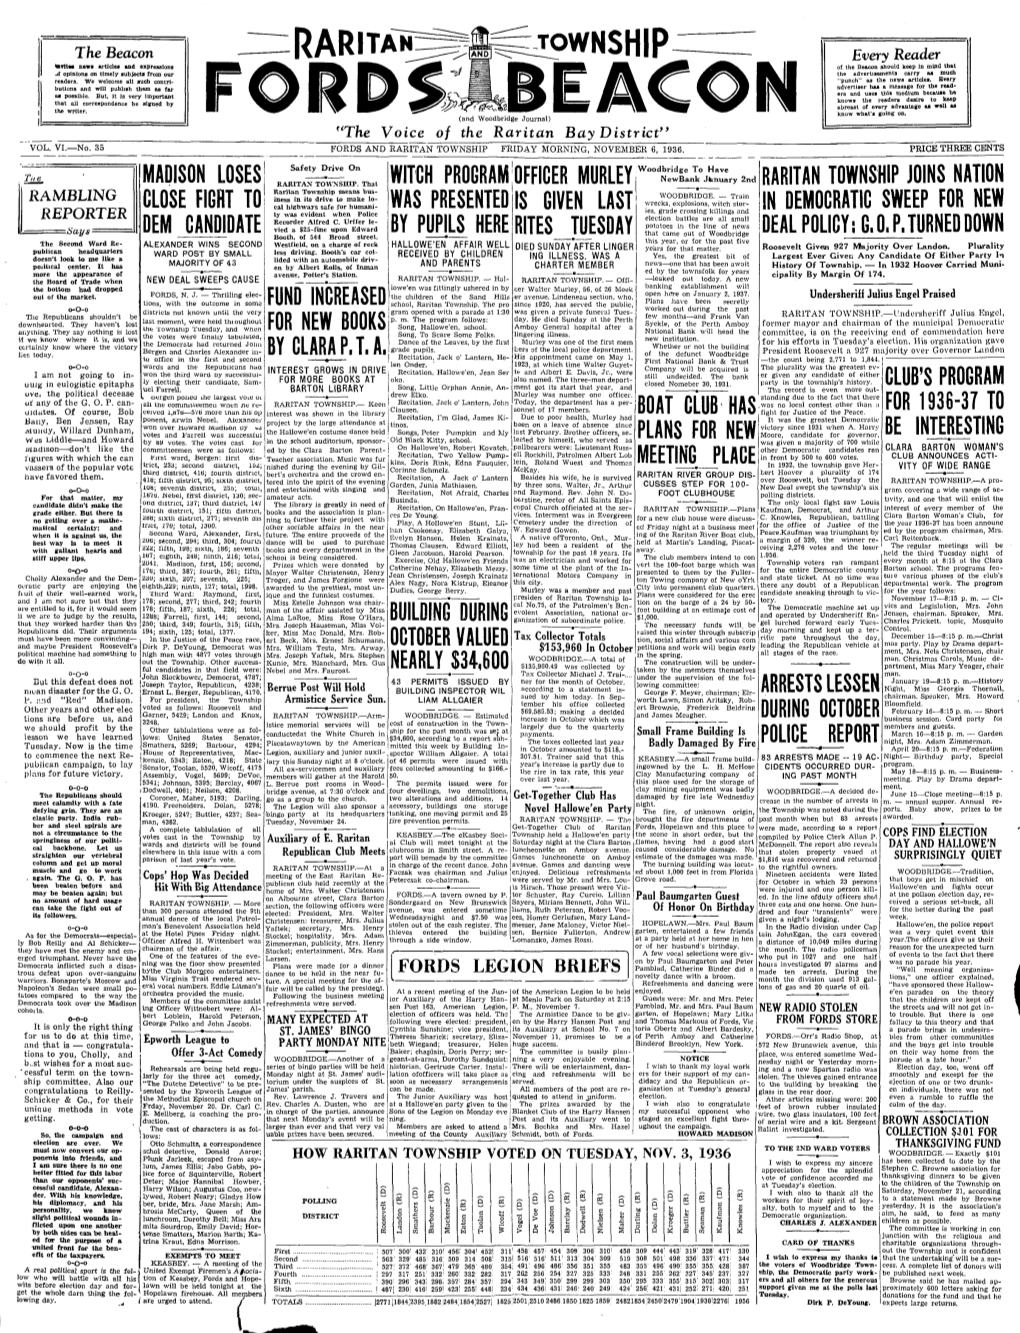 Fords and Raritan Township Friday Morning, November 6, 1936